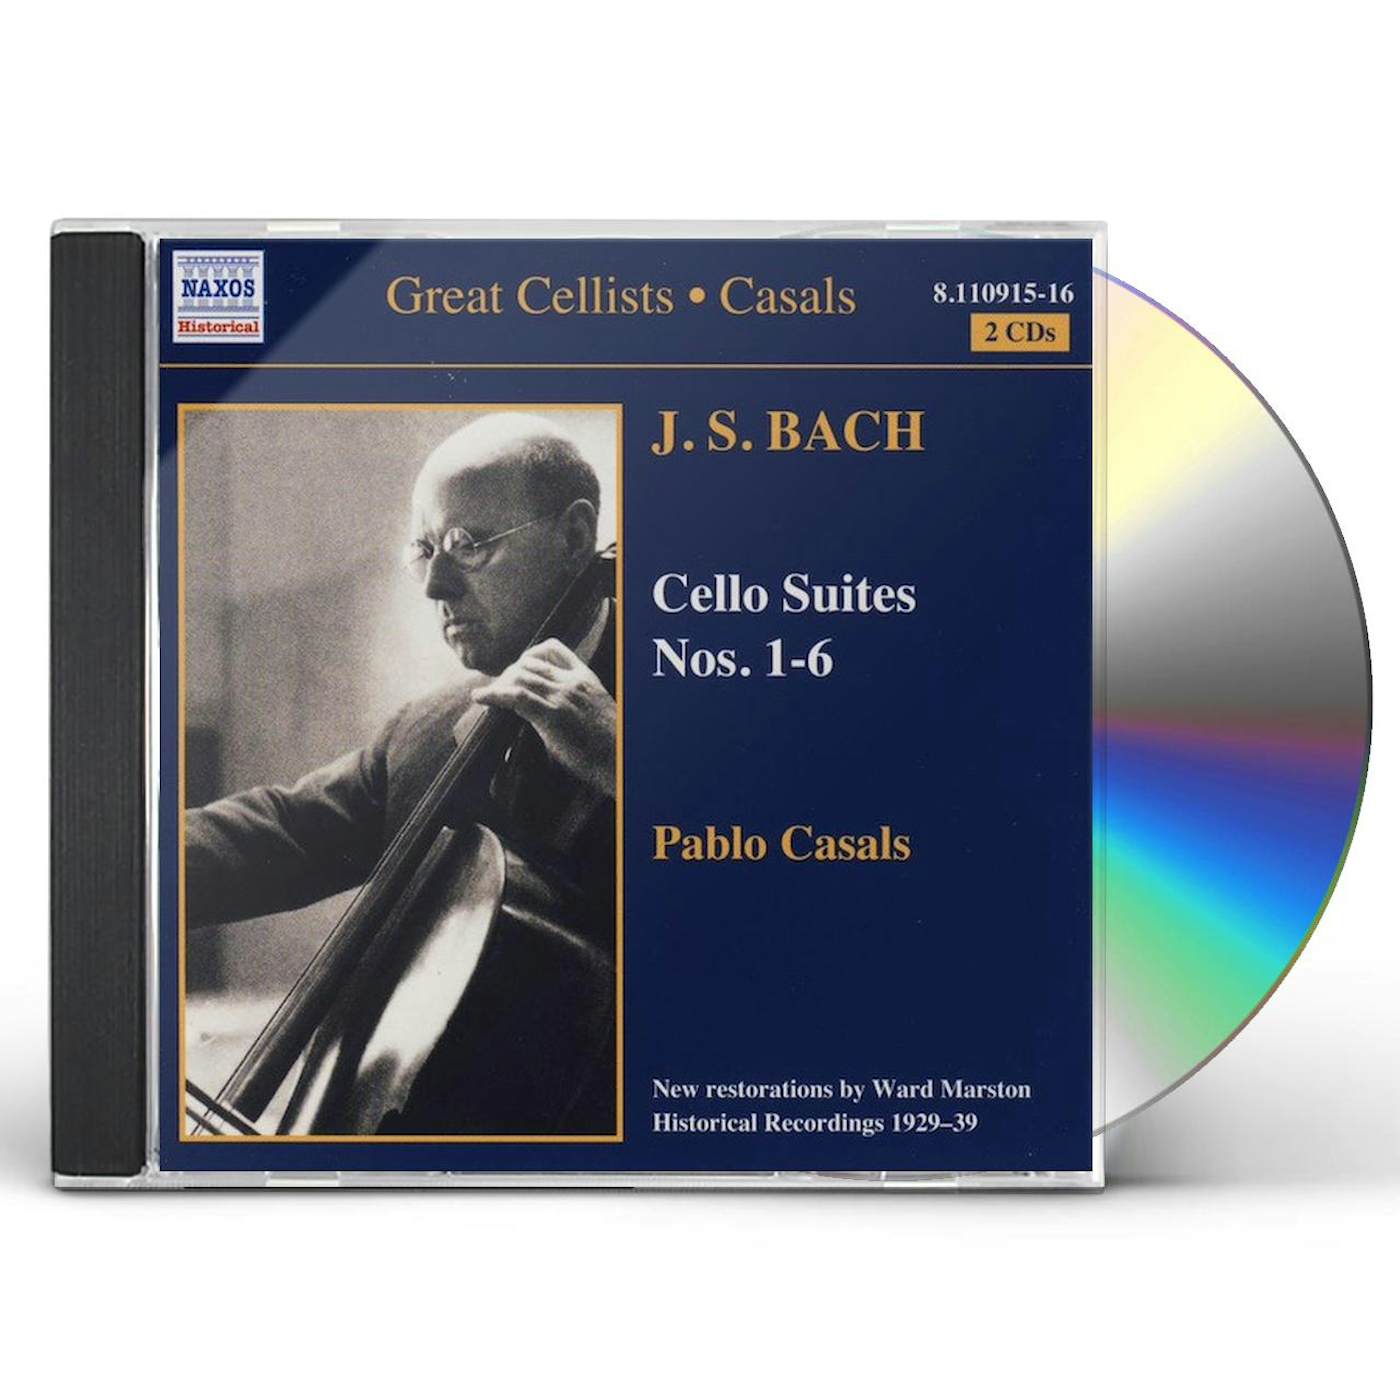 CELLO SUITES NOS.1-6 - Johann Sebastian Bach CD